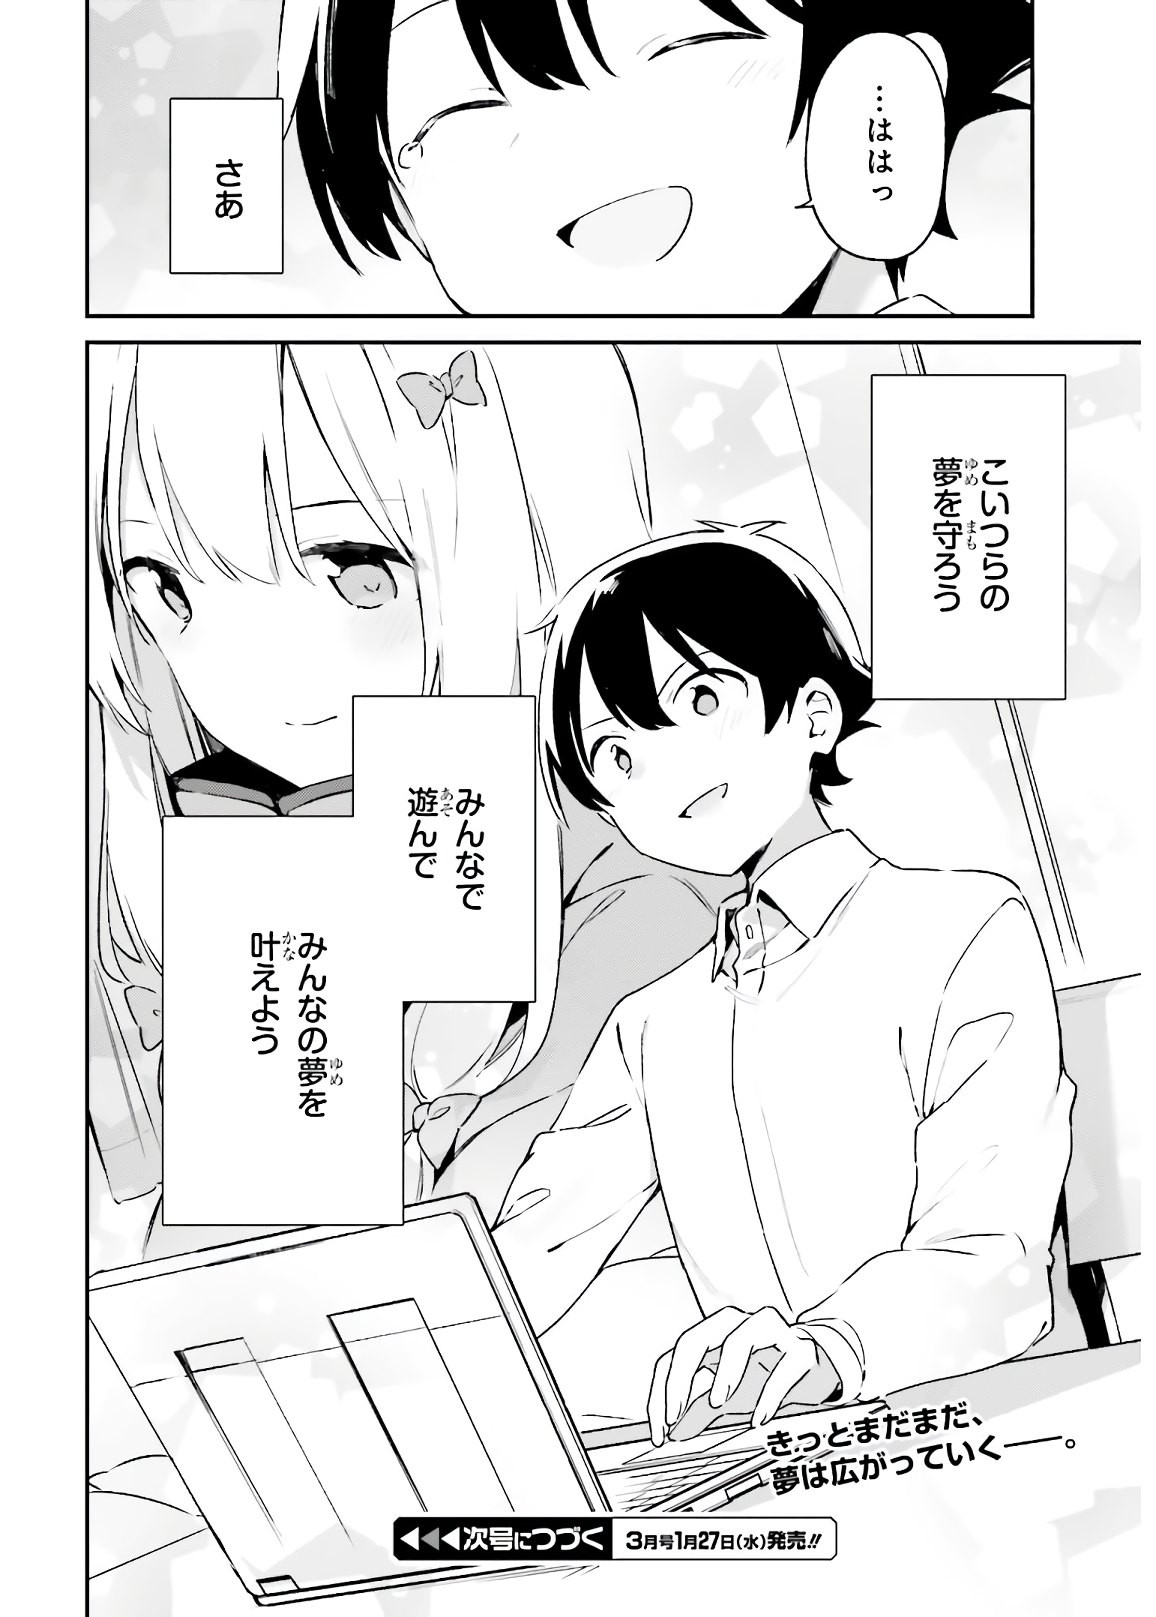 Ero Manga Sensei - Chapter 74 - Page 40